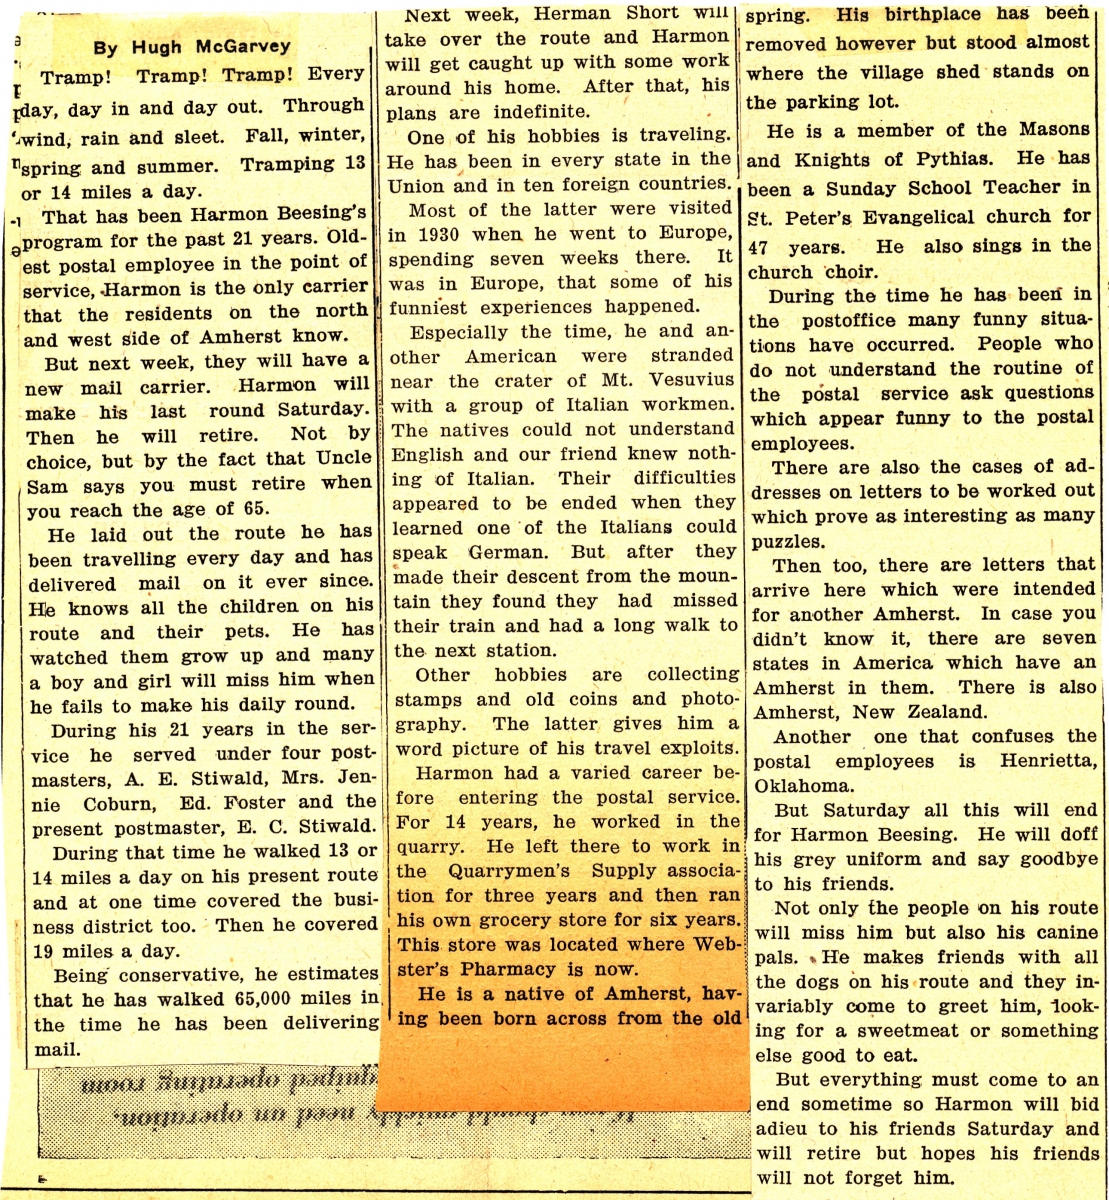 Amherst News Times 10-29-1937 Part 2